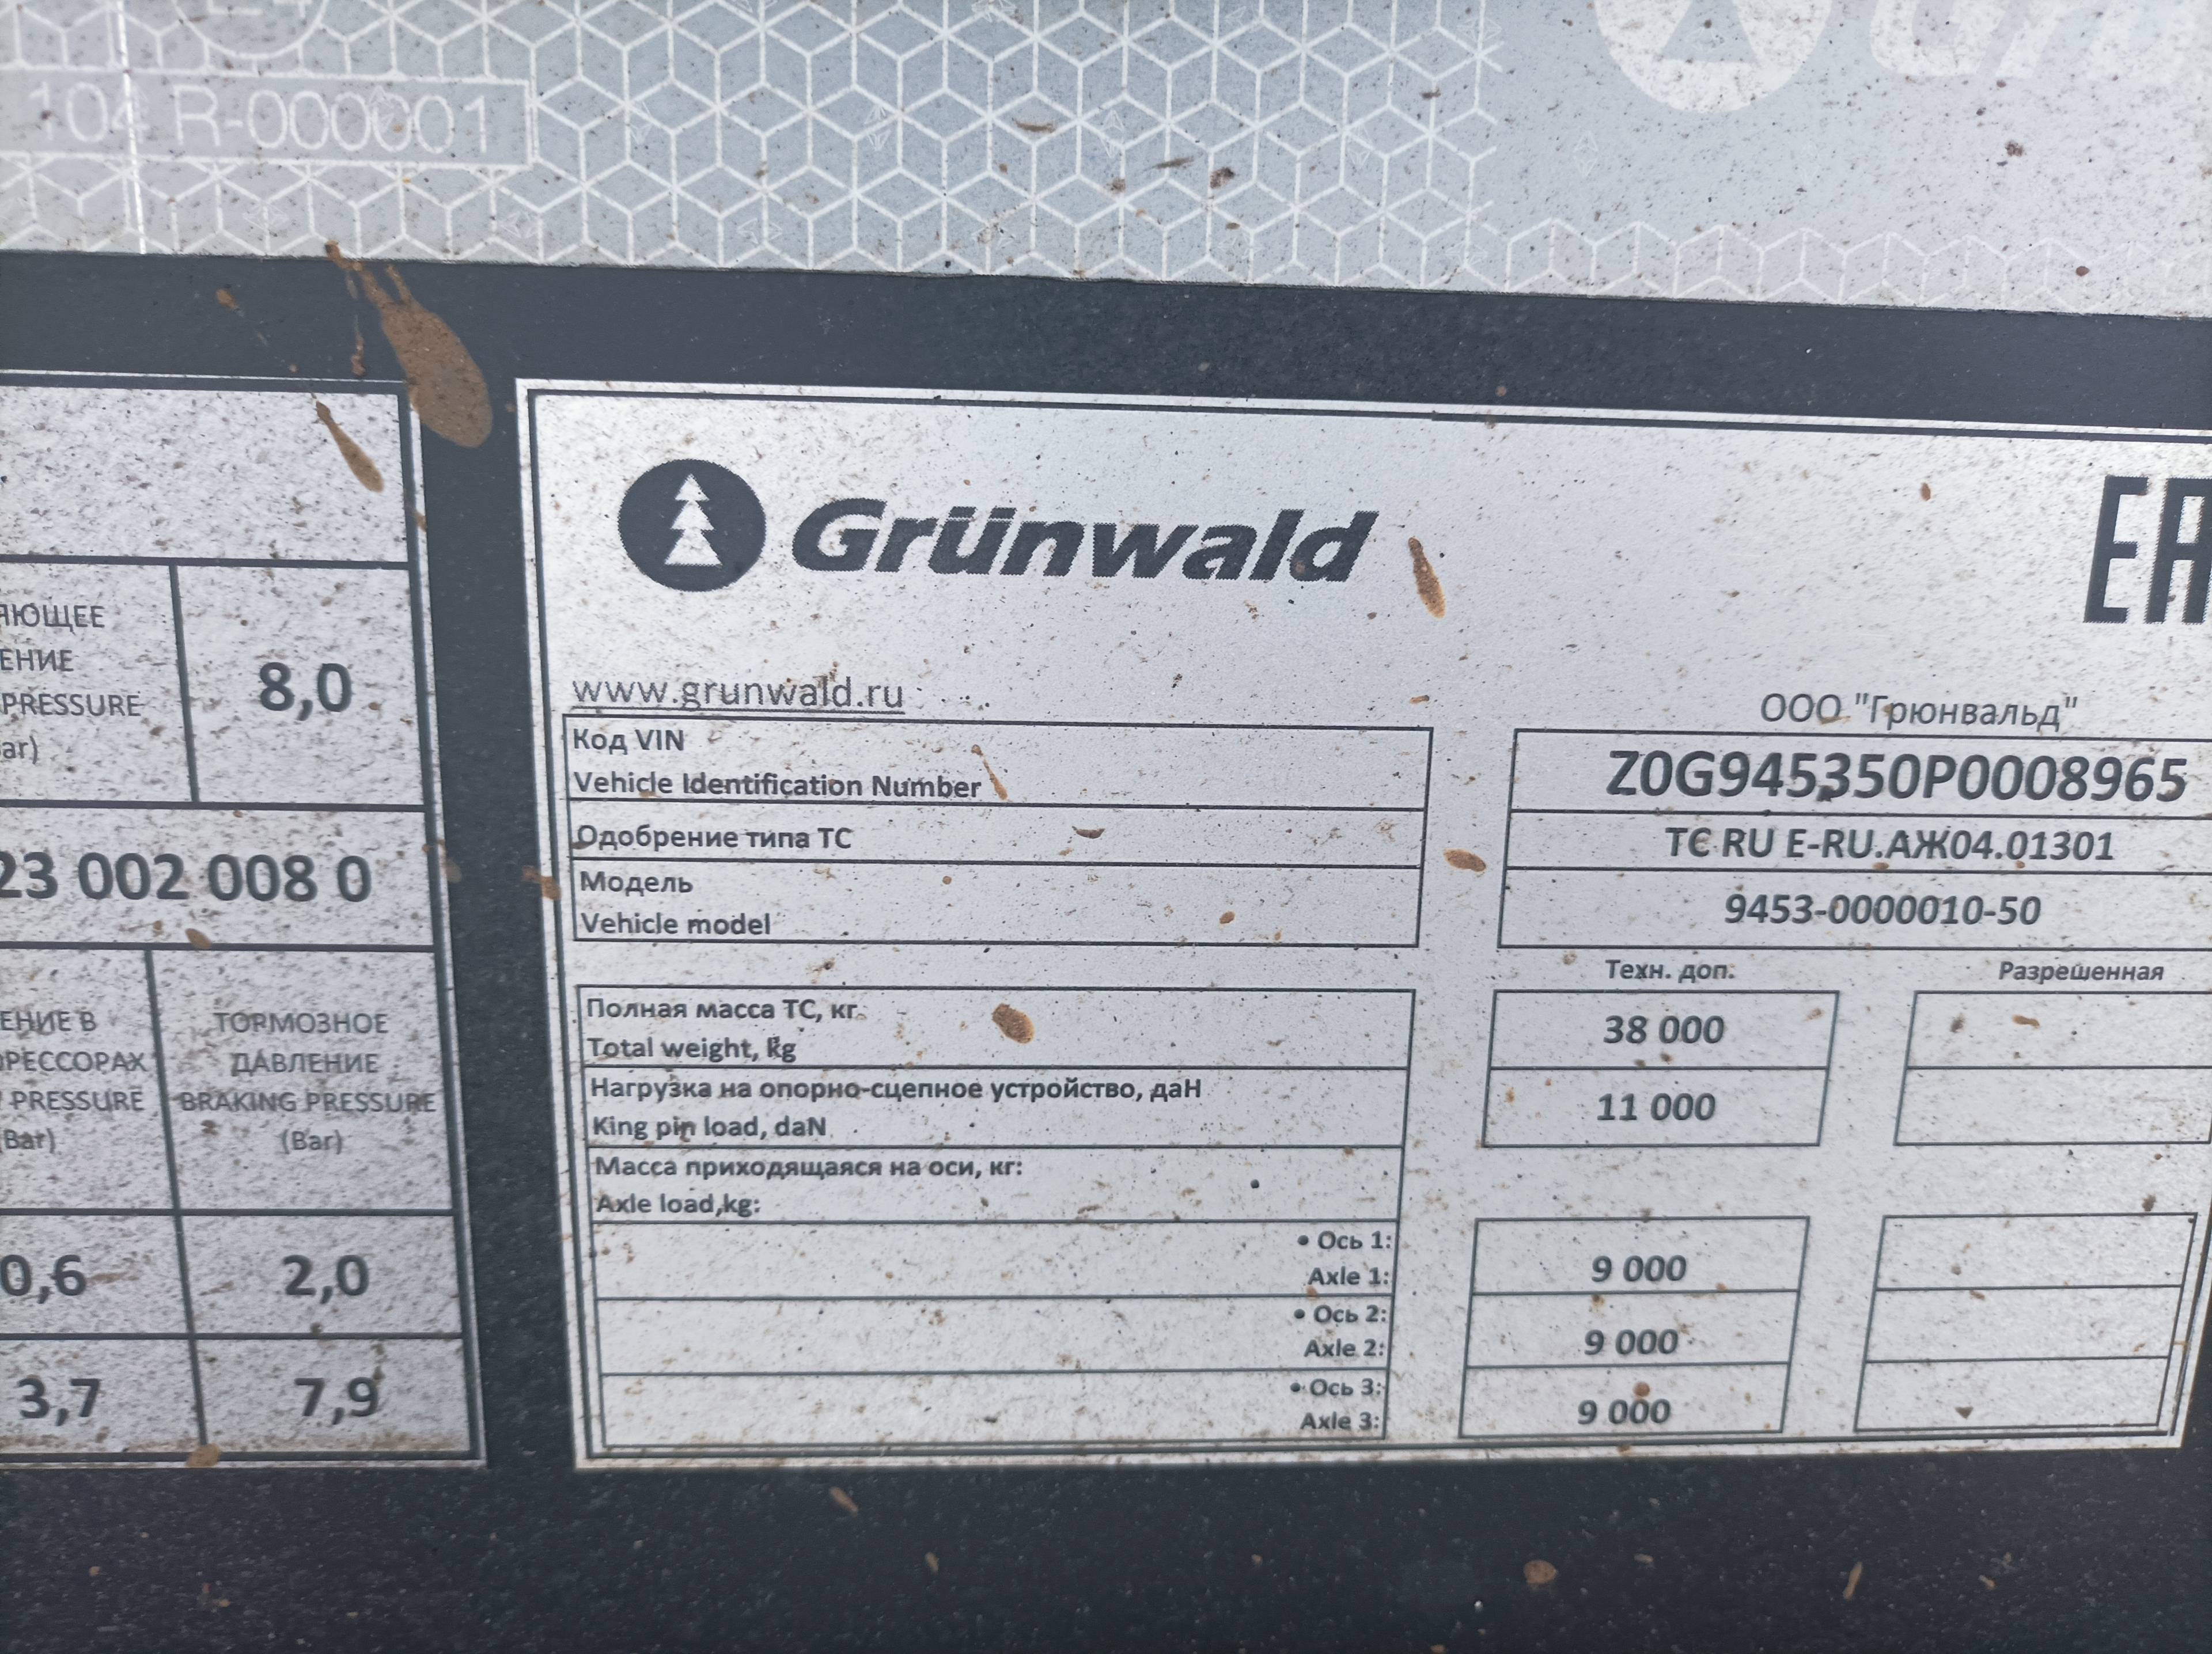 Grunwald Самосвальный TSt 34 (9453-0000010-50) Лот 000001310